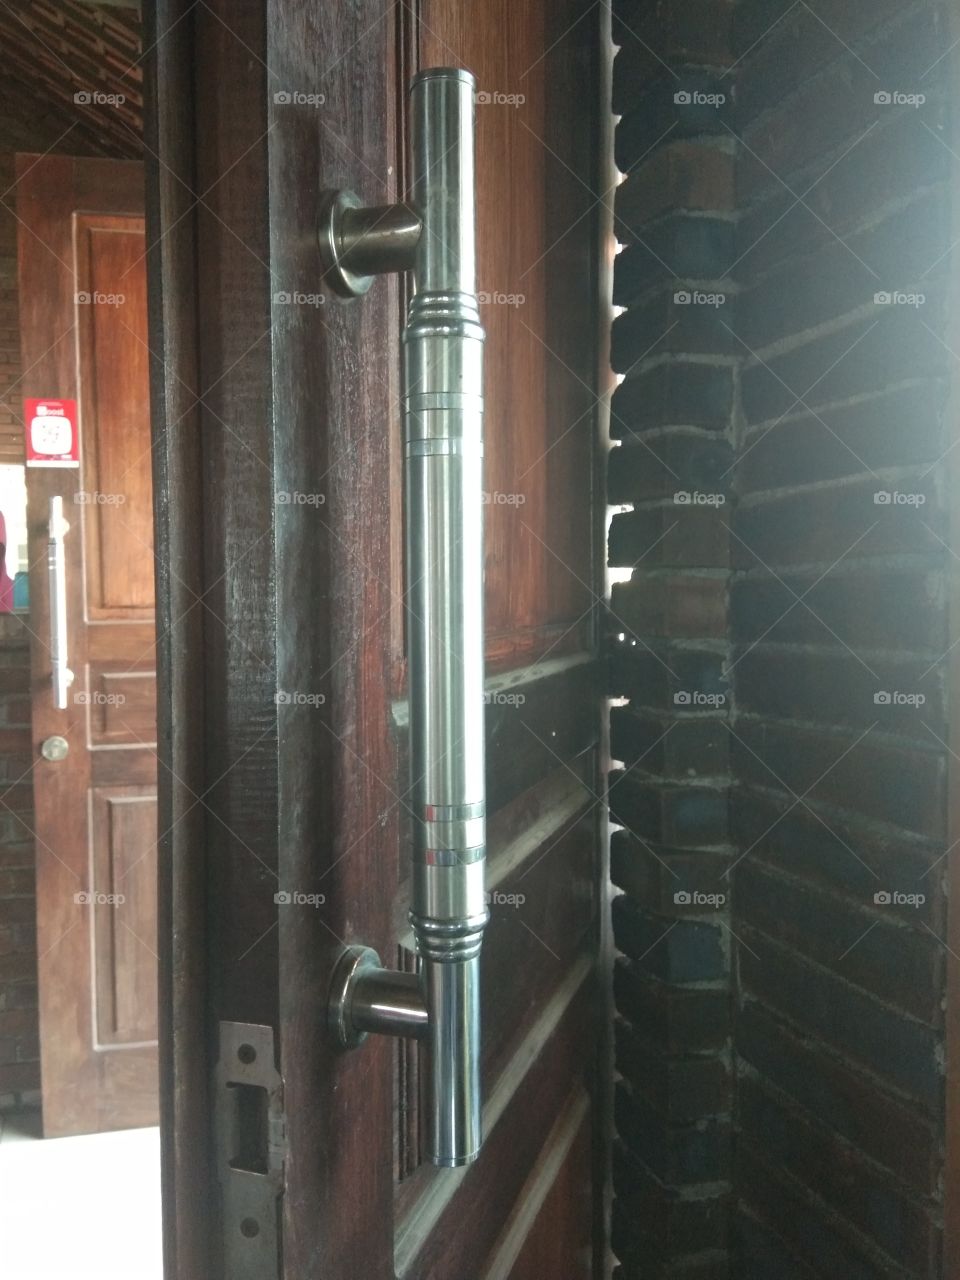 door handle from stainlesteel